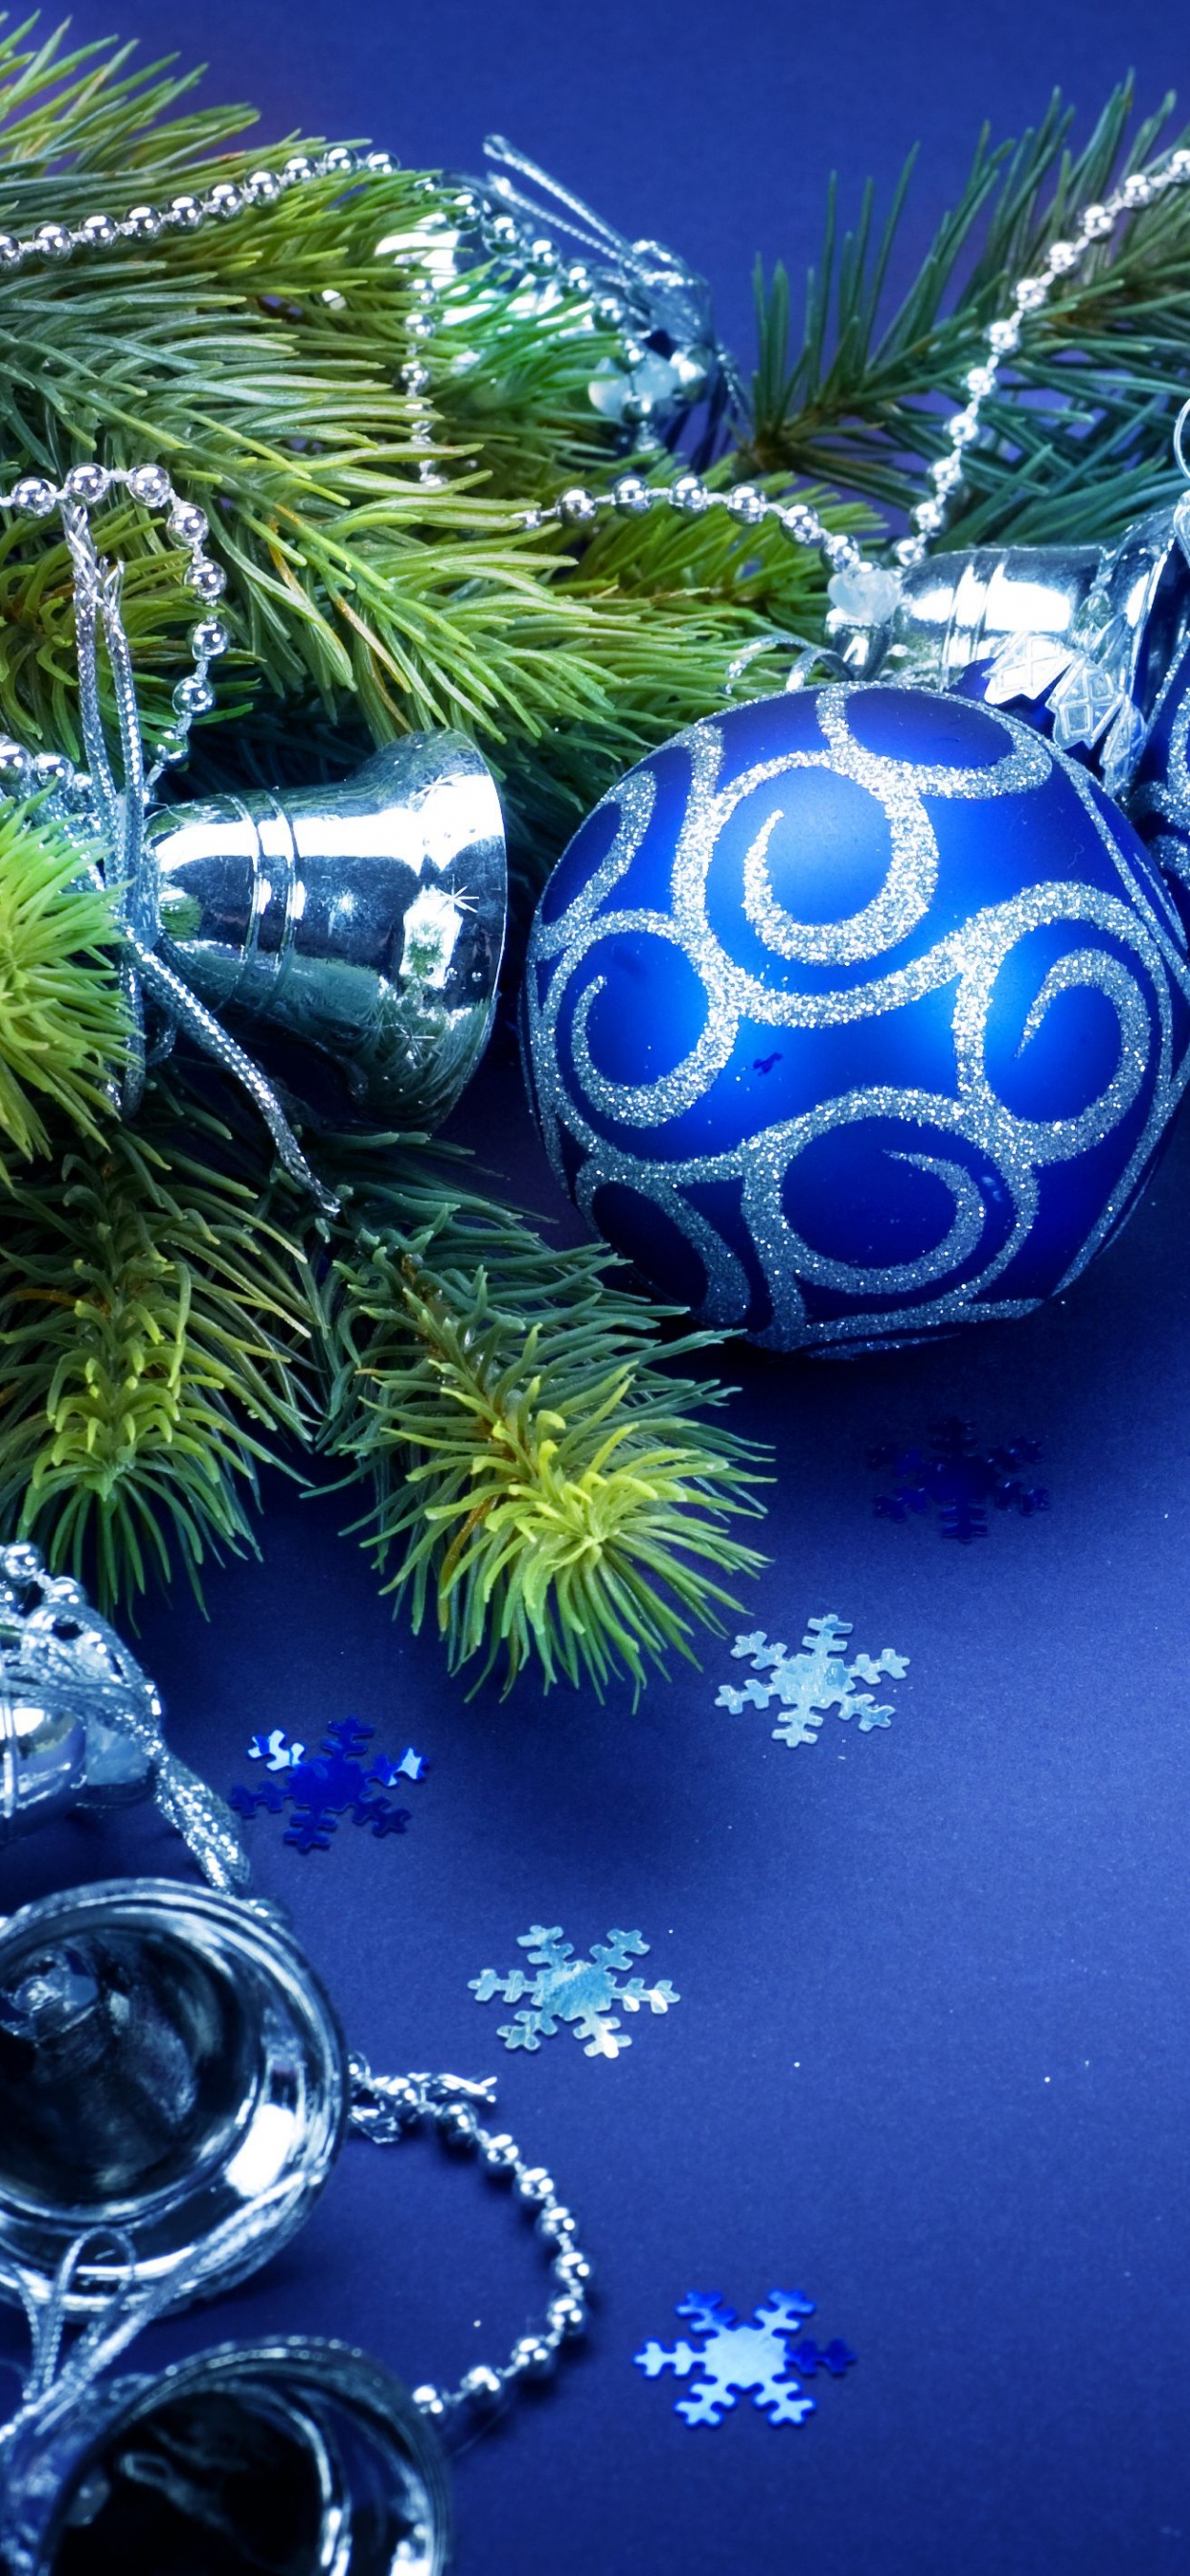 Le Jour De Noël, Ornement de Noël, Blue, Décoration de Noël, Arbre de Noël. Wallpaper in 1242x2688 Resolution